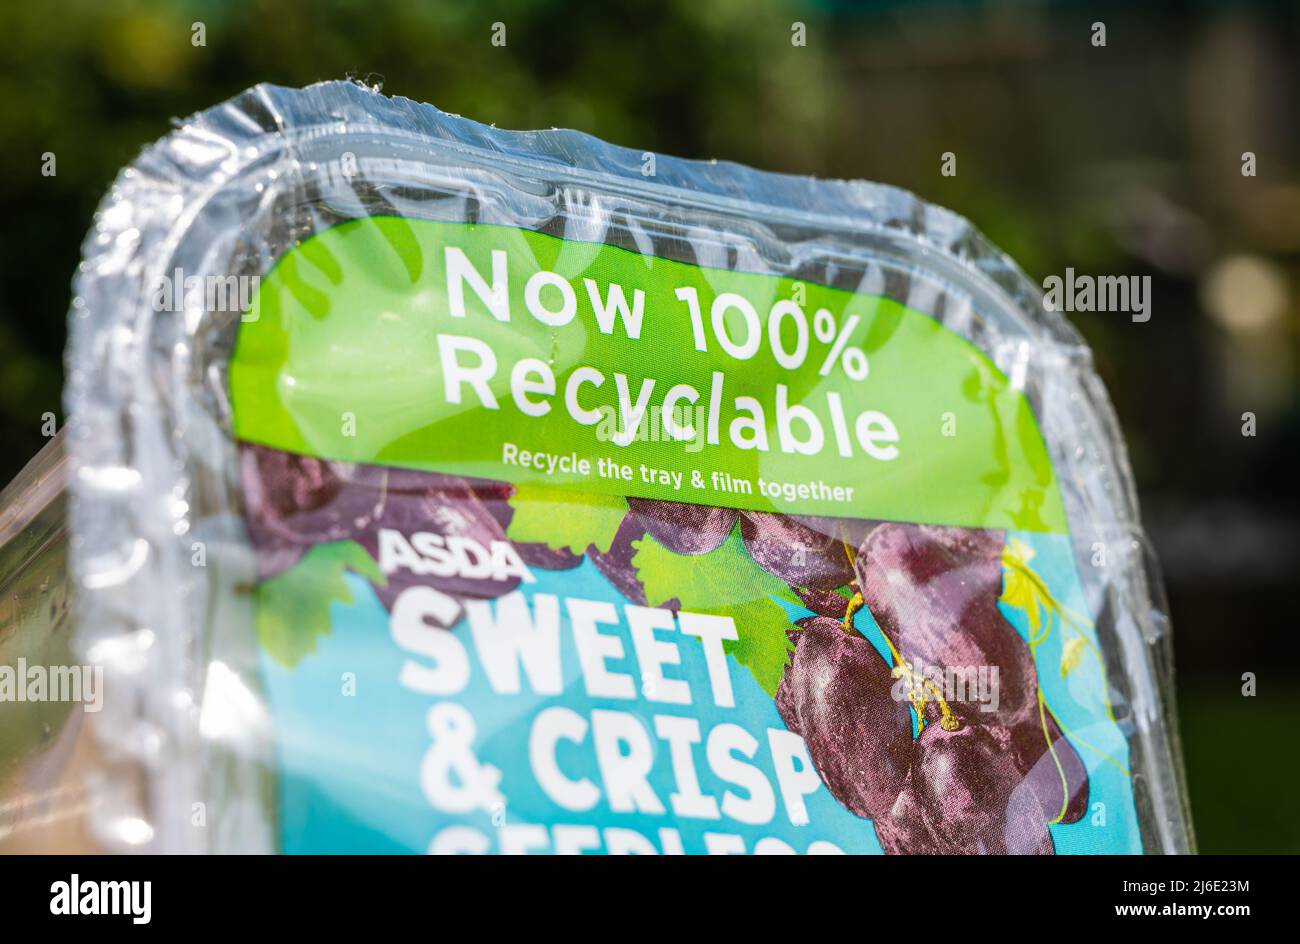 Imballaggio alimentare per le uve provenienti da un negozio di alimentari britannico che dichiara di essere riciclabile al 100%. Foto Stock